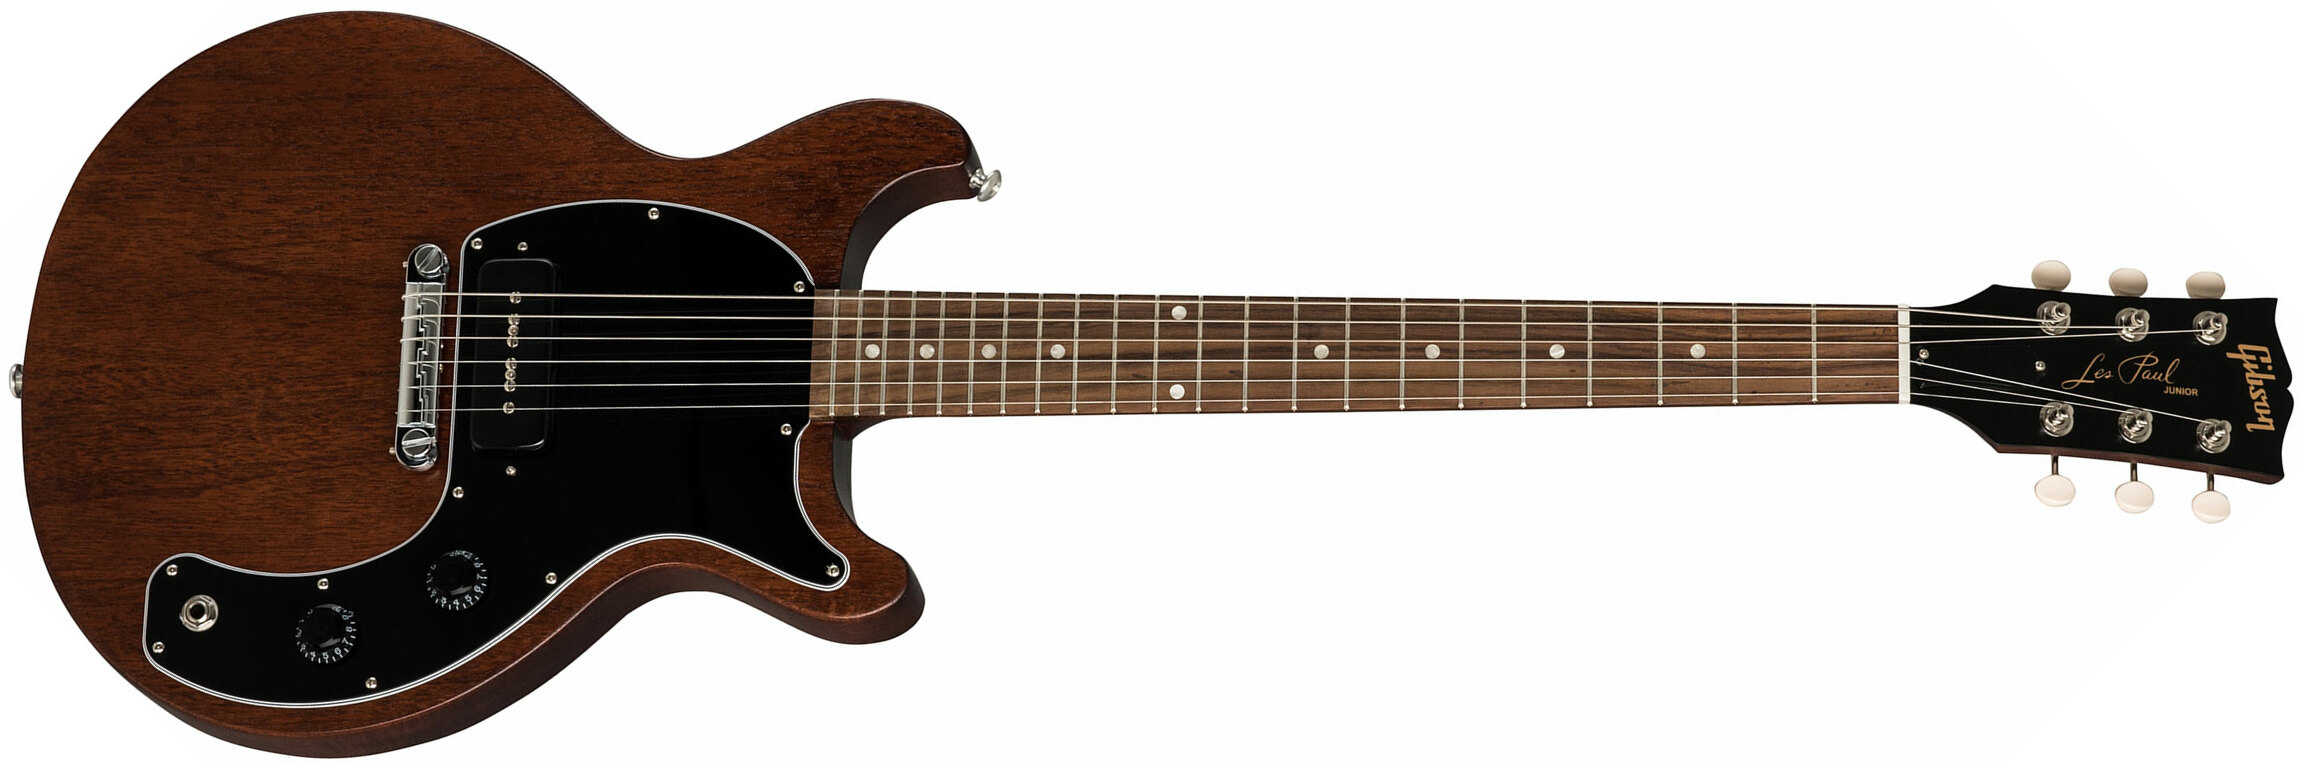 Gibson Les Paul Junior Tribute 2019 P90 Ht Rw - Worn Brown - Enkel gesneden elektrische gitaar - Main picture